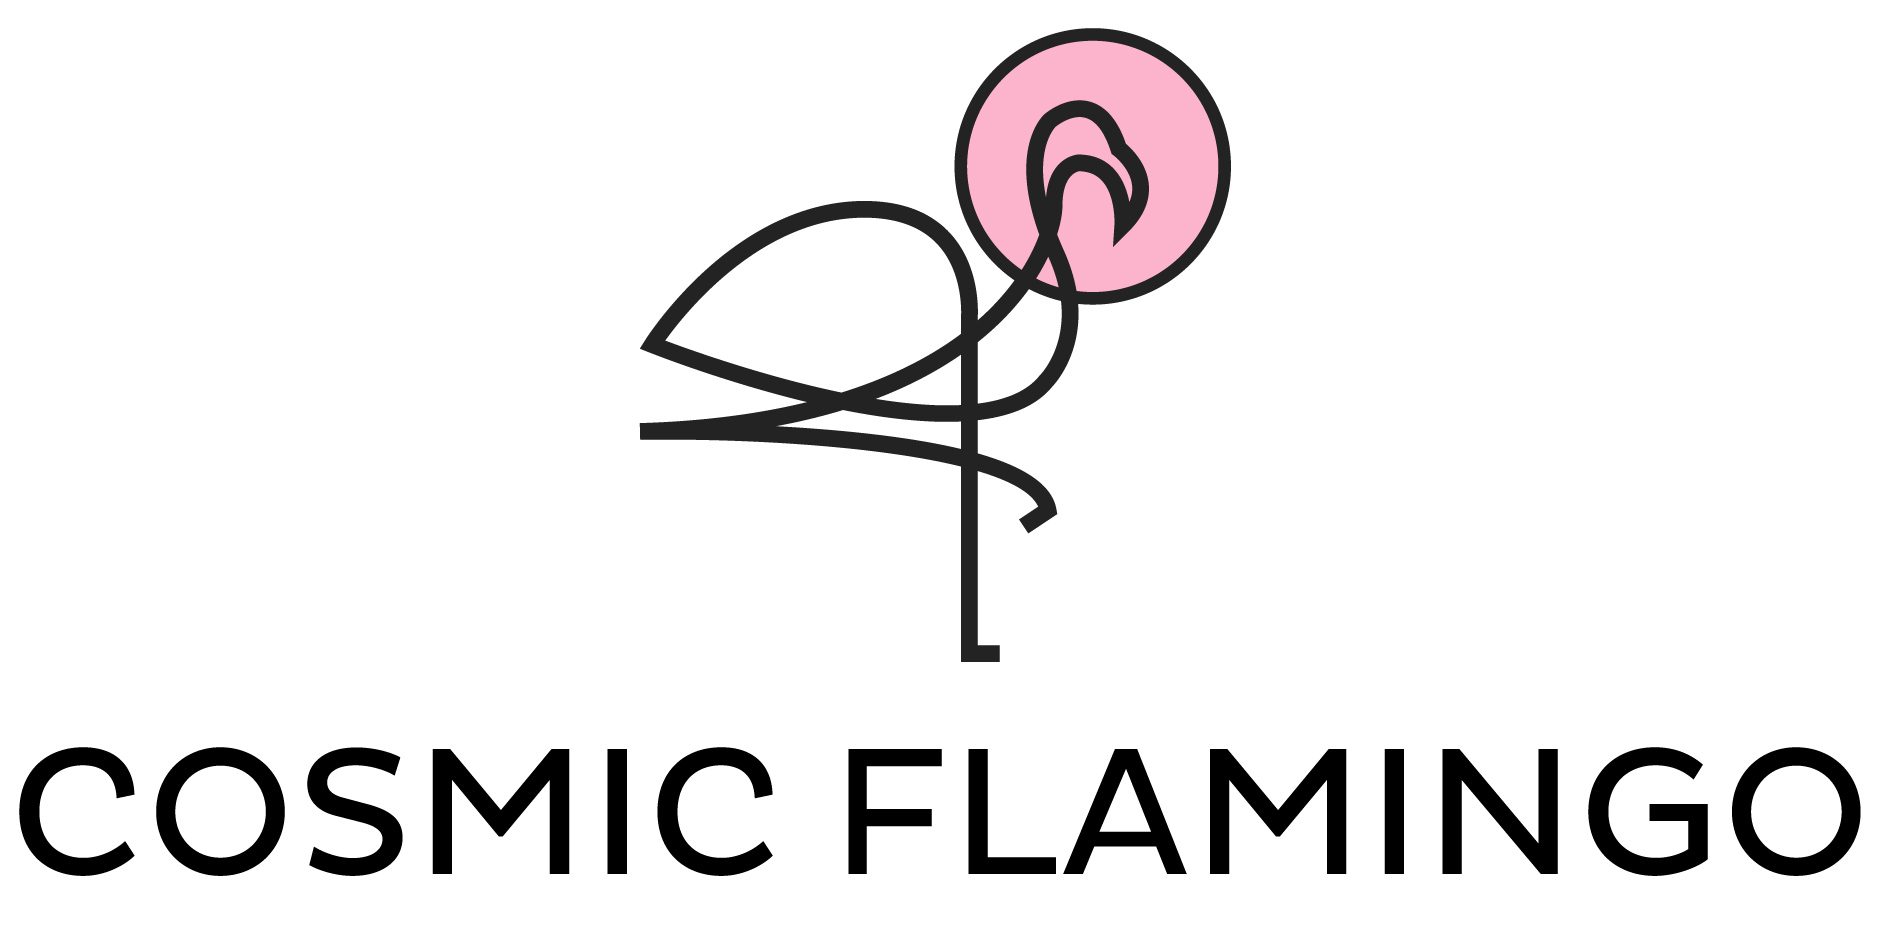 Cosmic Flamingo